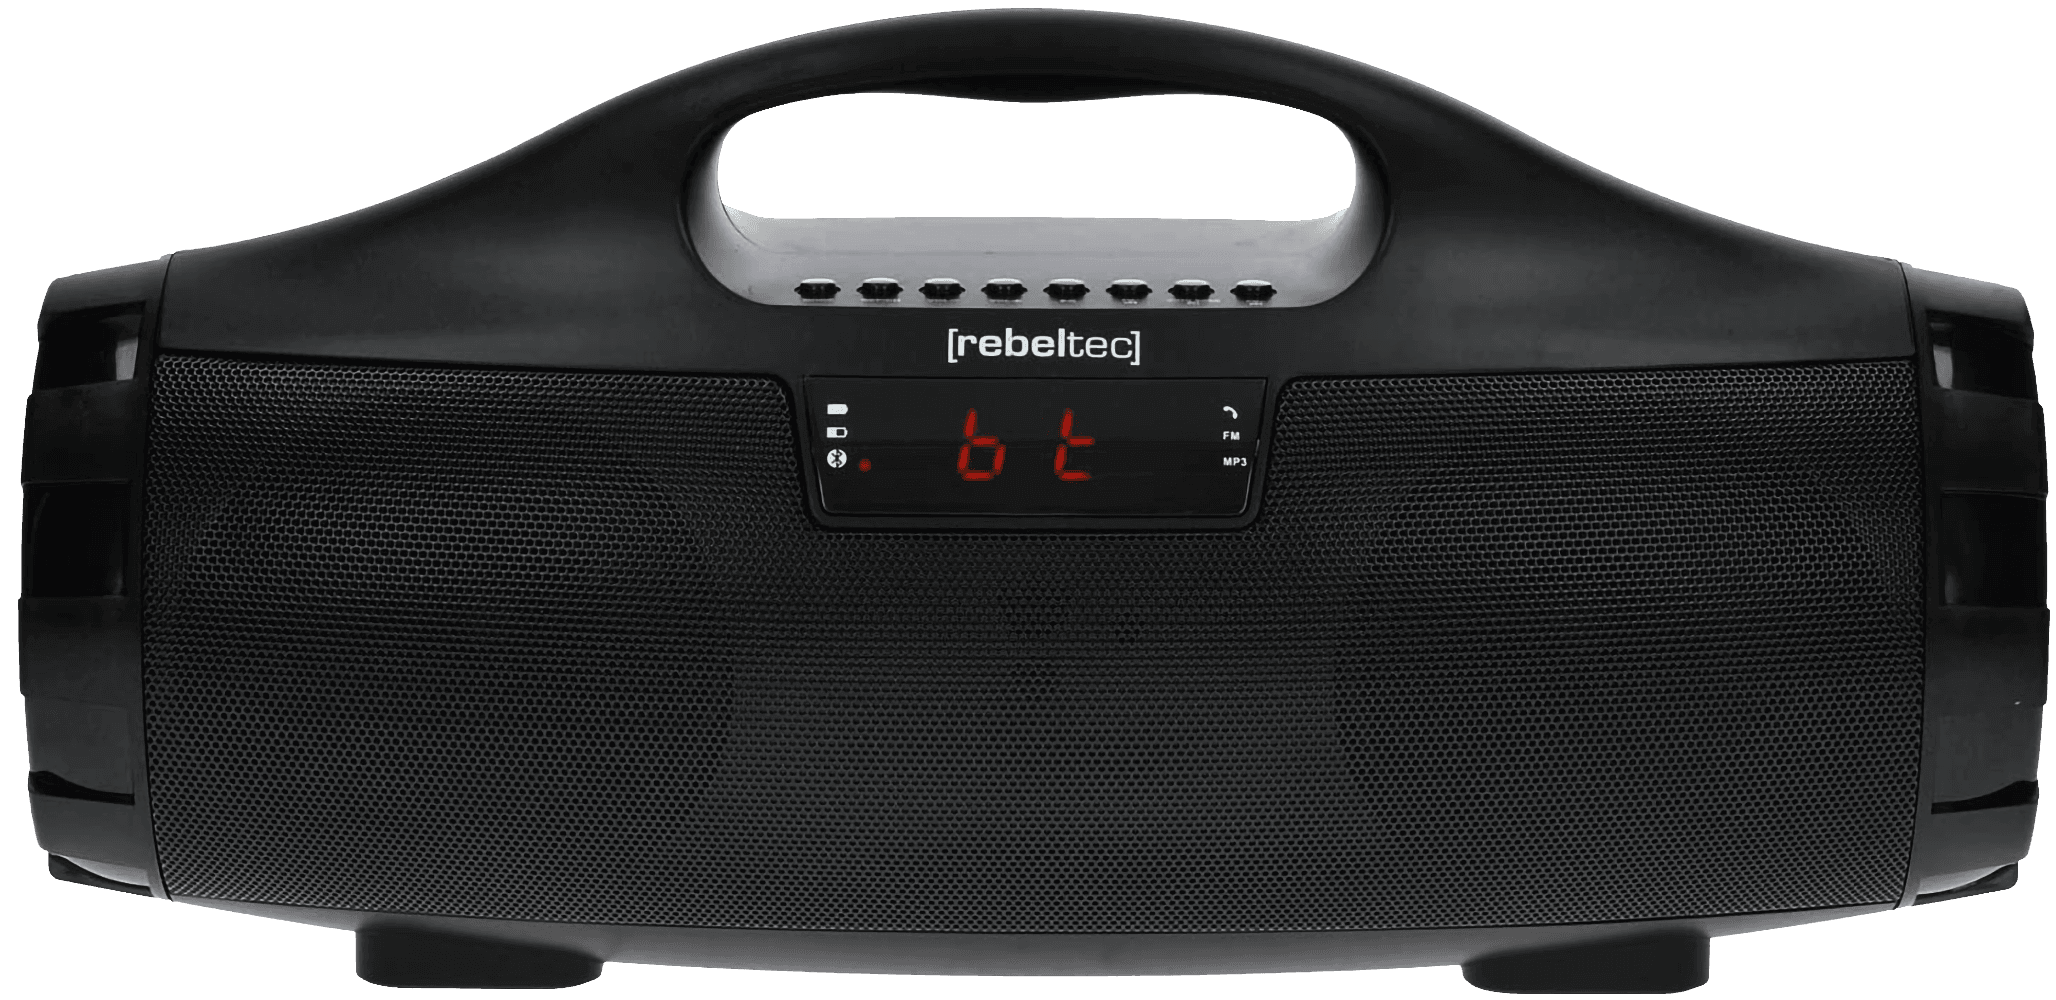 Nokia 1 kompatibilis bluetooth hangszóró Rebeltec Soundbox 390 fekete